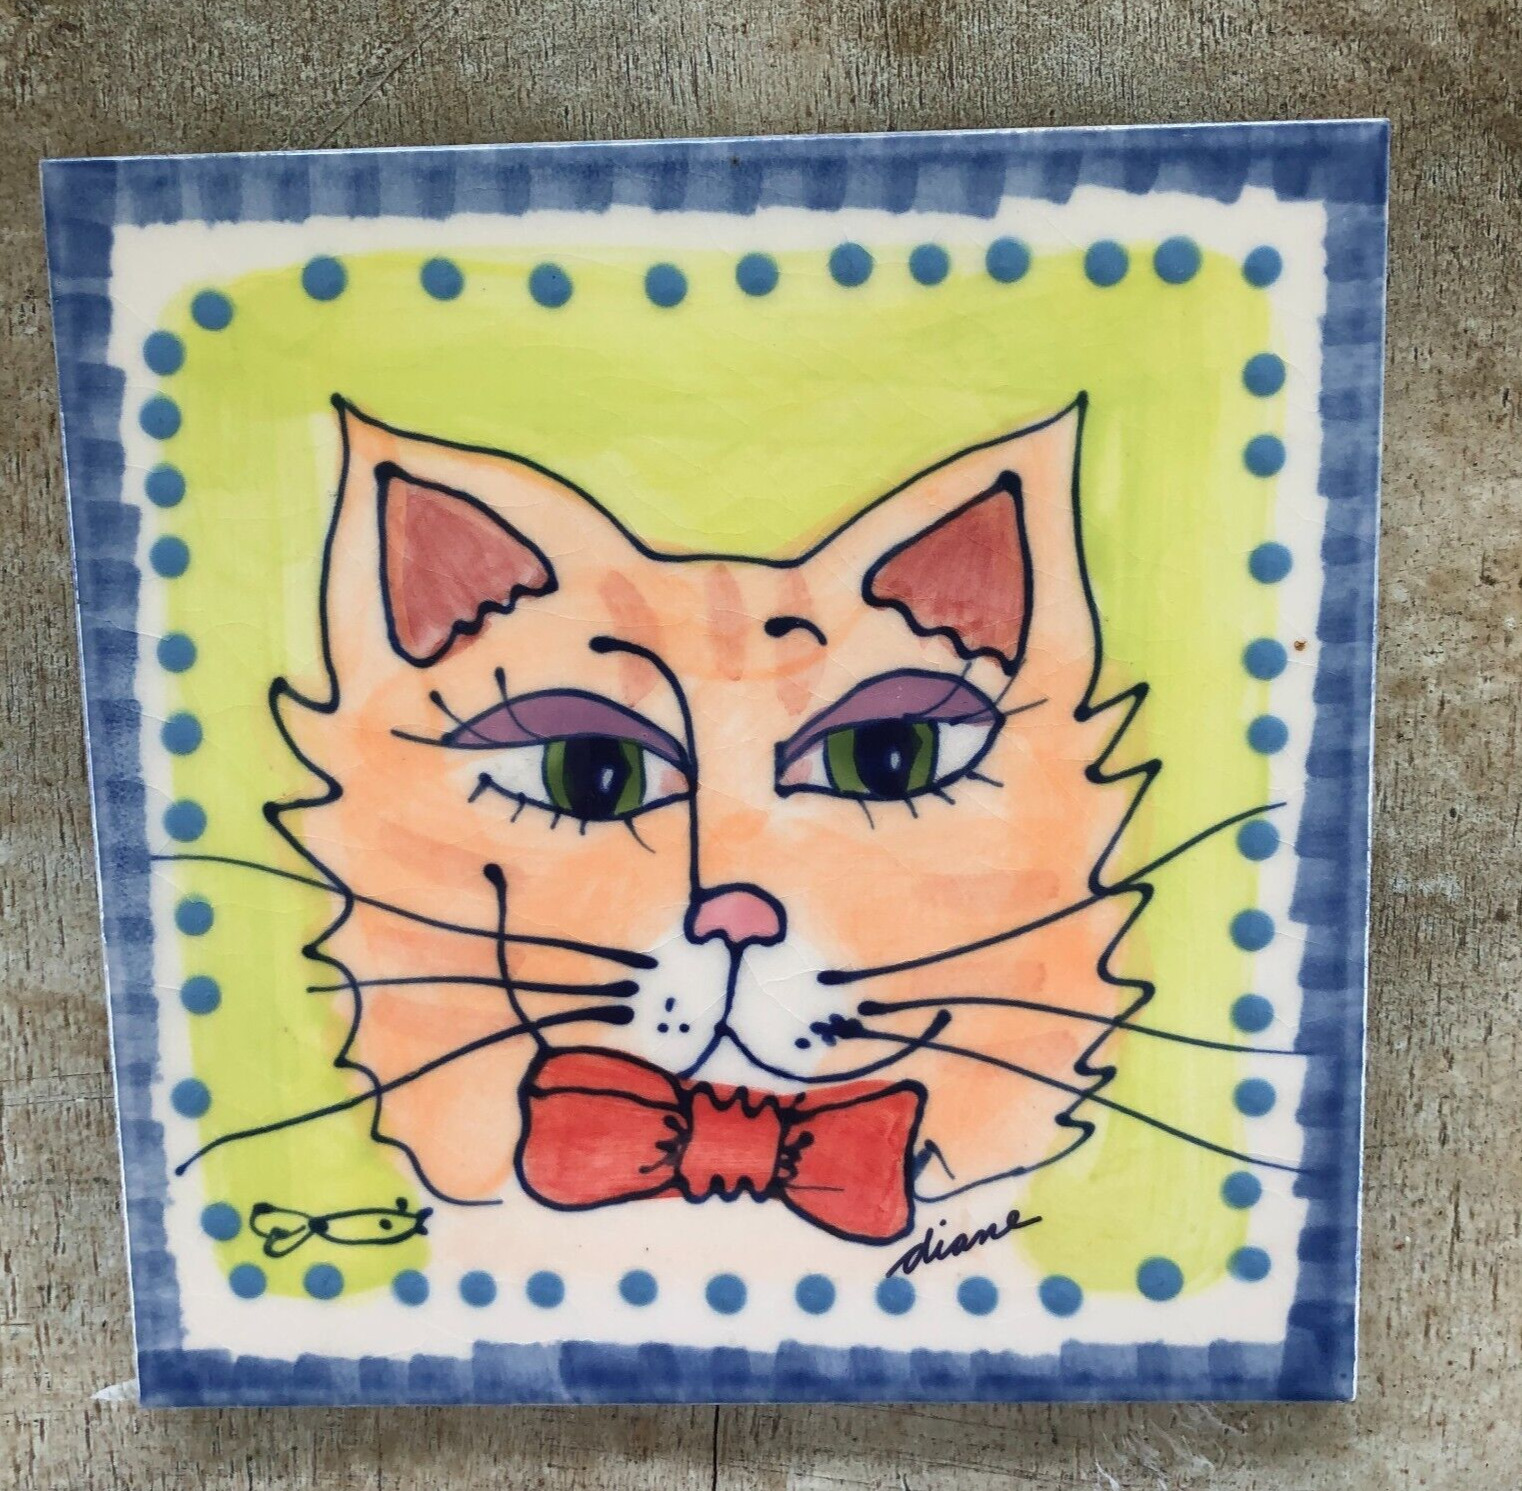 Diane Artware Hand Painted Kitty Cat Tile Trivet 6\